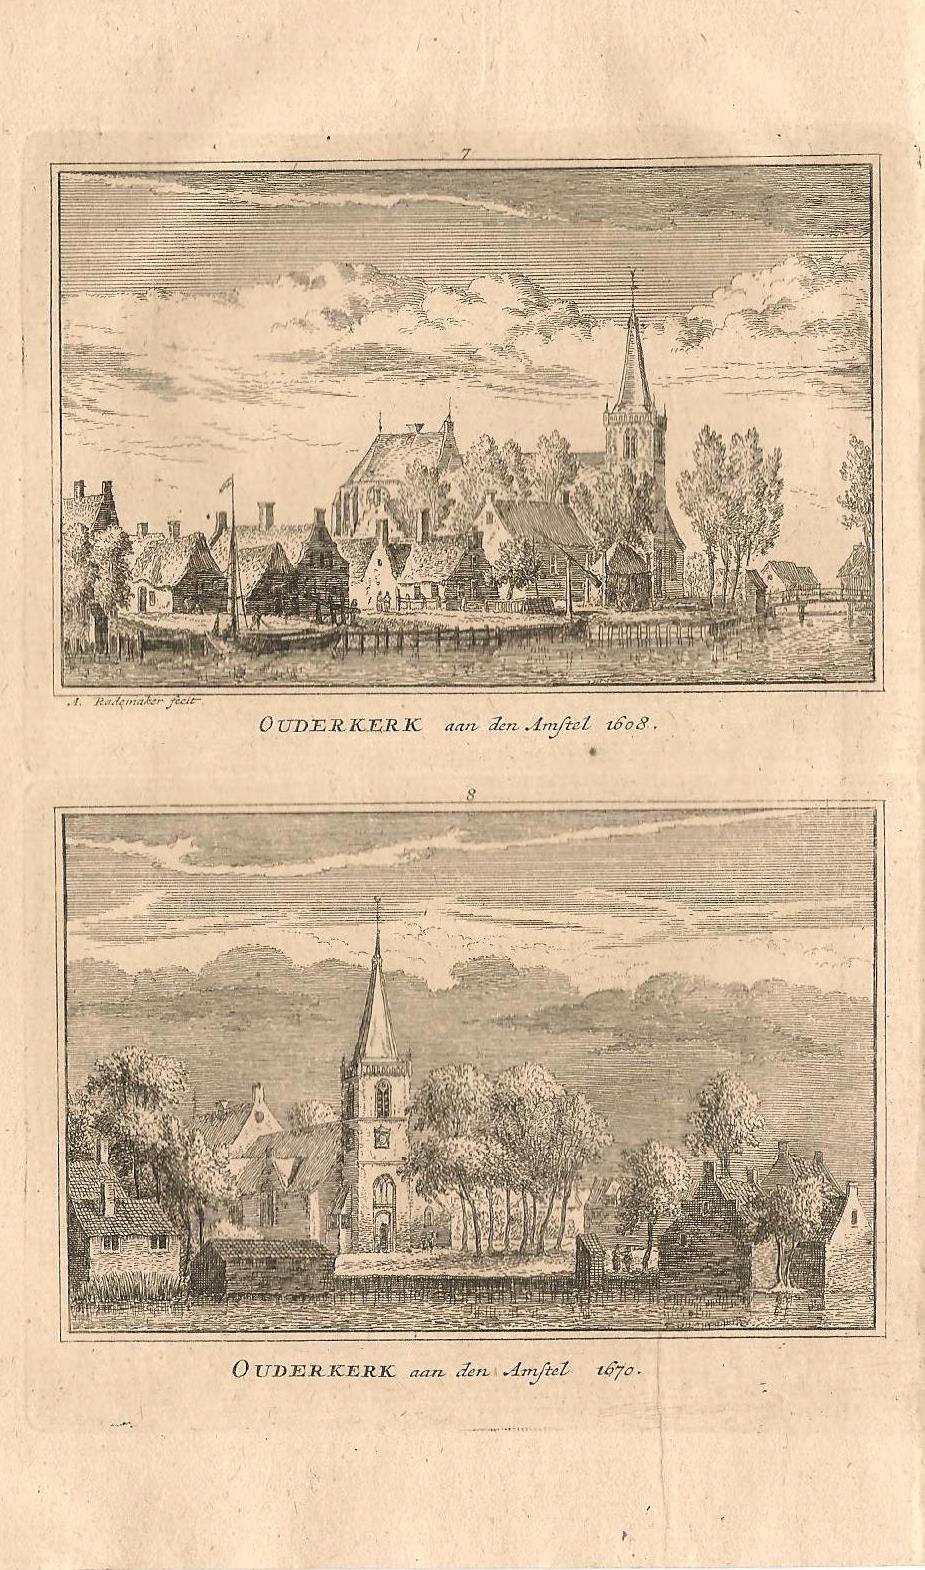 Ouderkerk aan de Amstel - A Rademaker / JA Crajenschot, - 1792